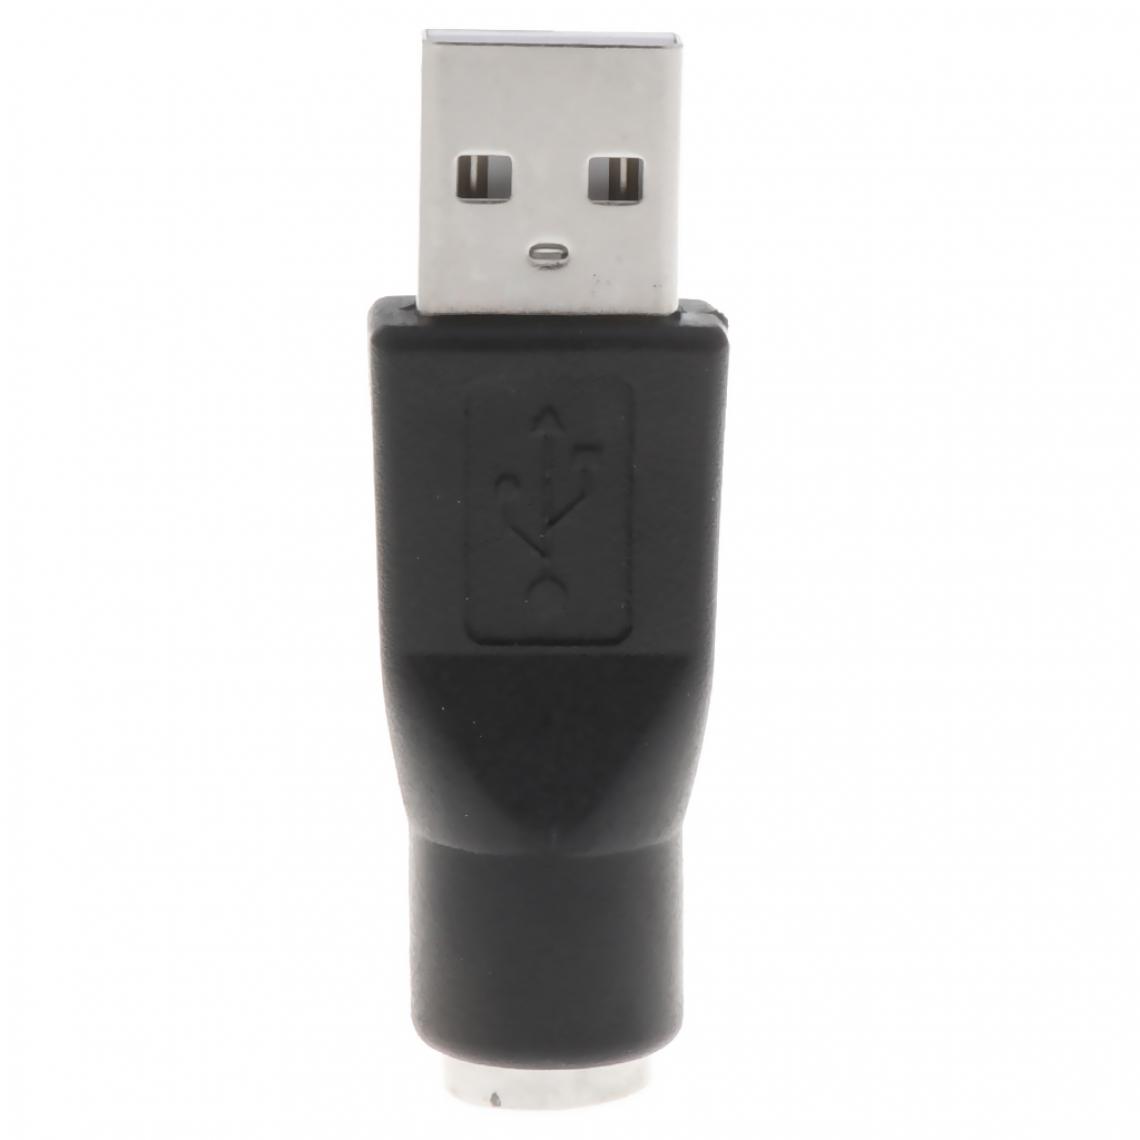 marque generique - Adaptateur de remplacement pour convertisseur USB mâle à femelle PS / 2, noir - Hub